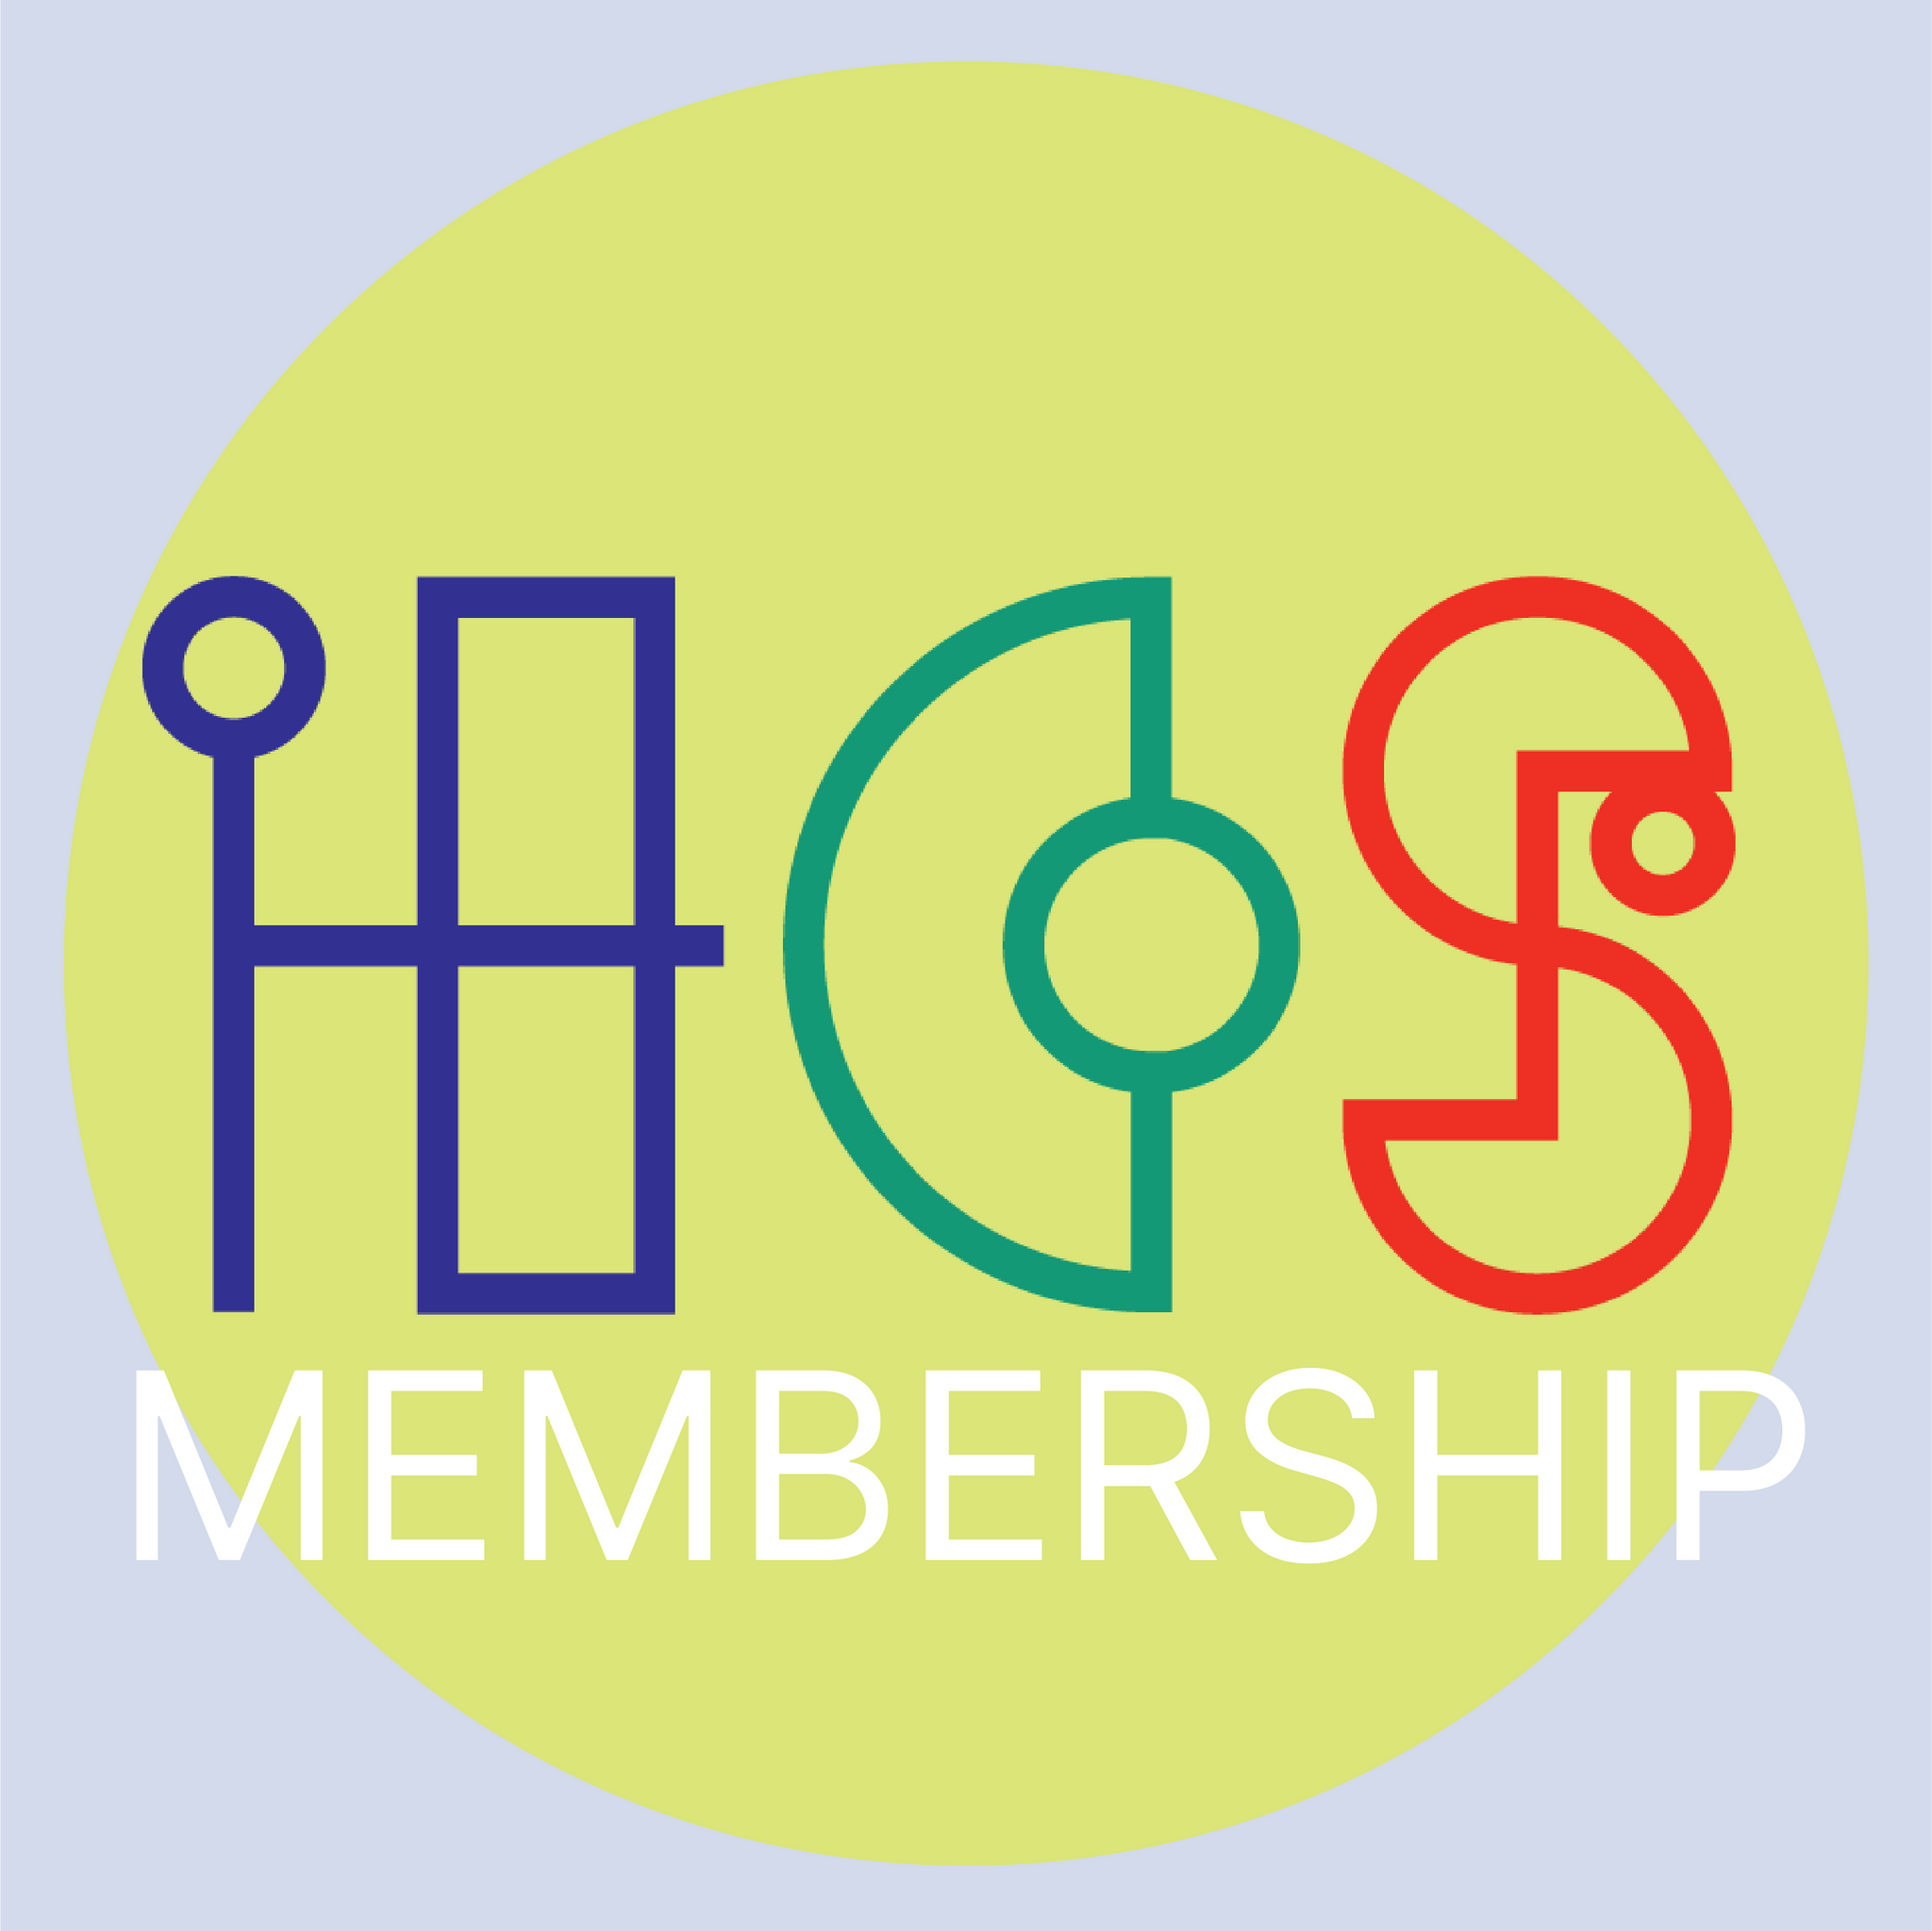 New Member - Standard Studio Membership - 3 Month Trial Period